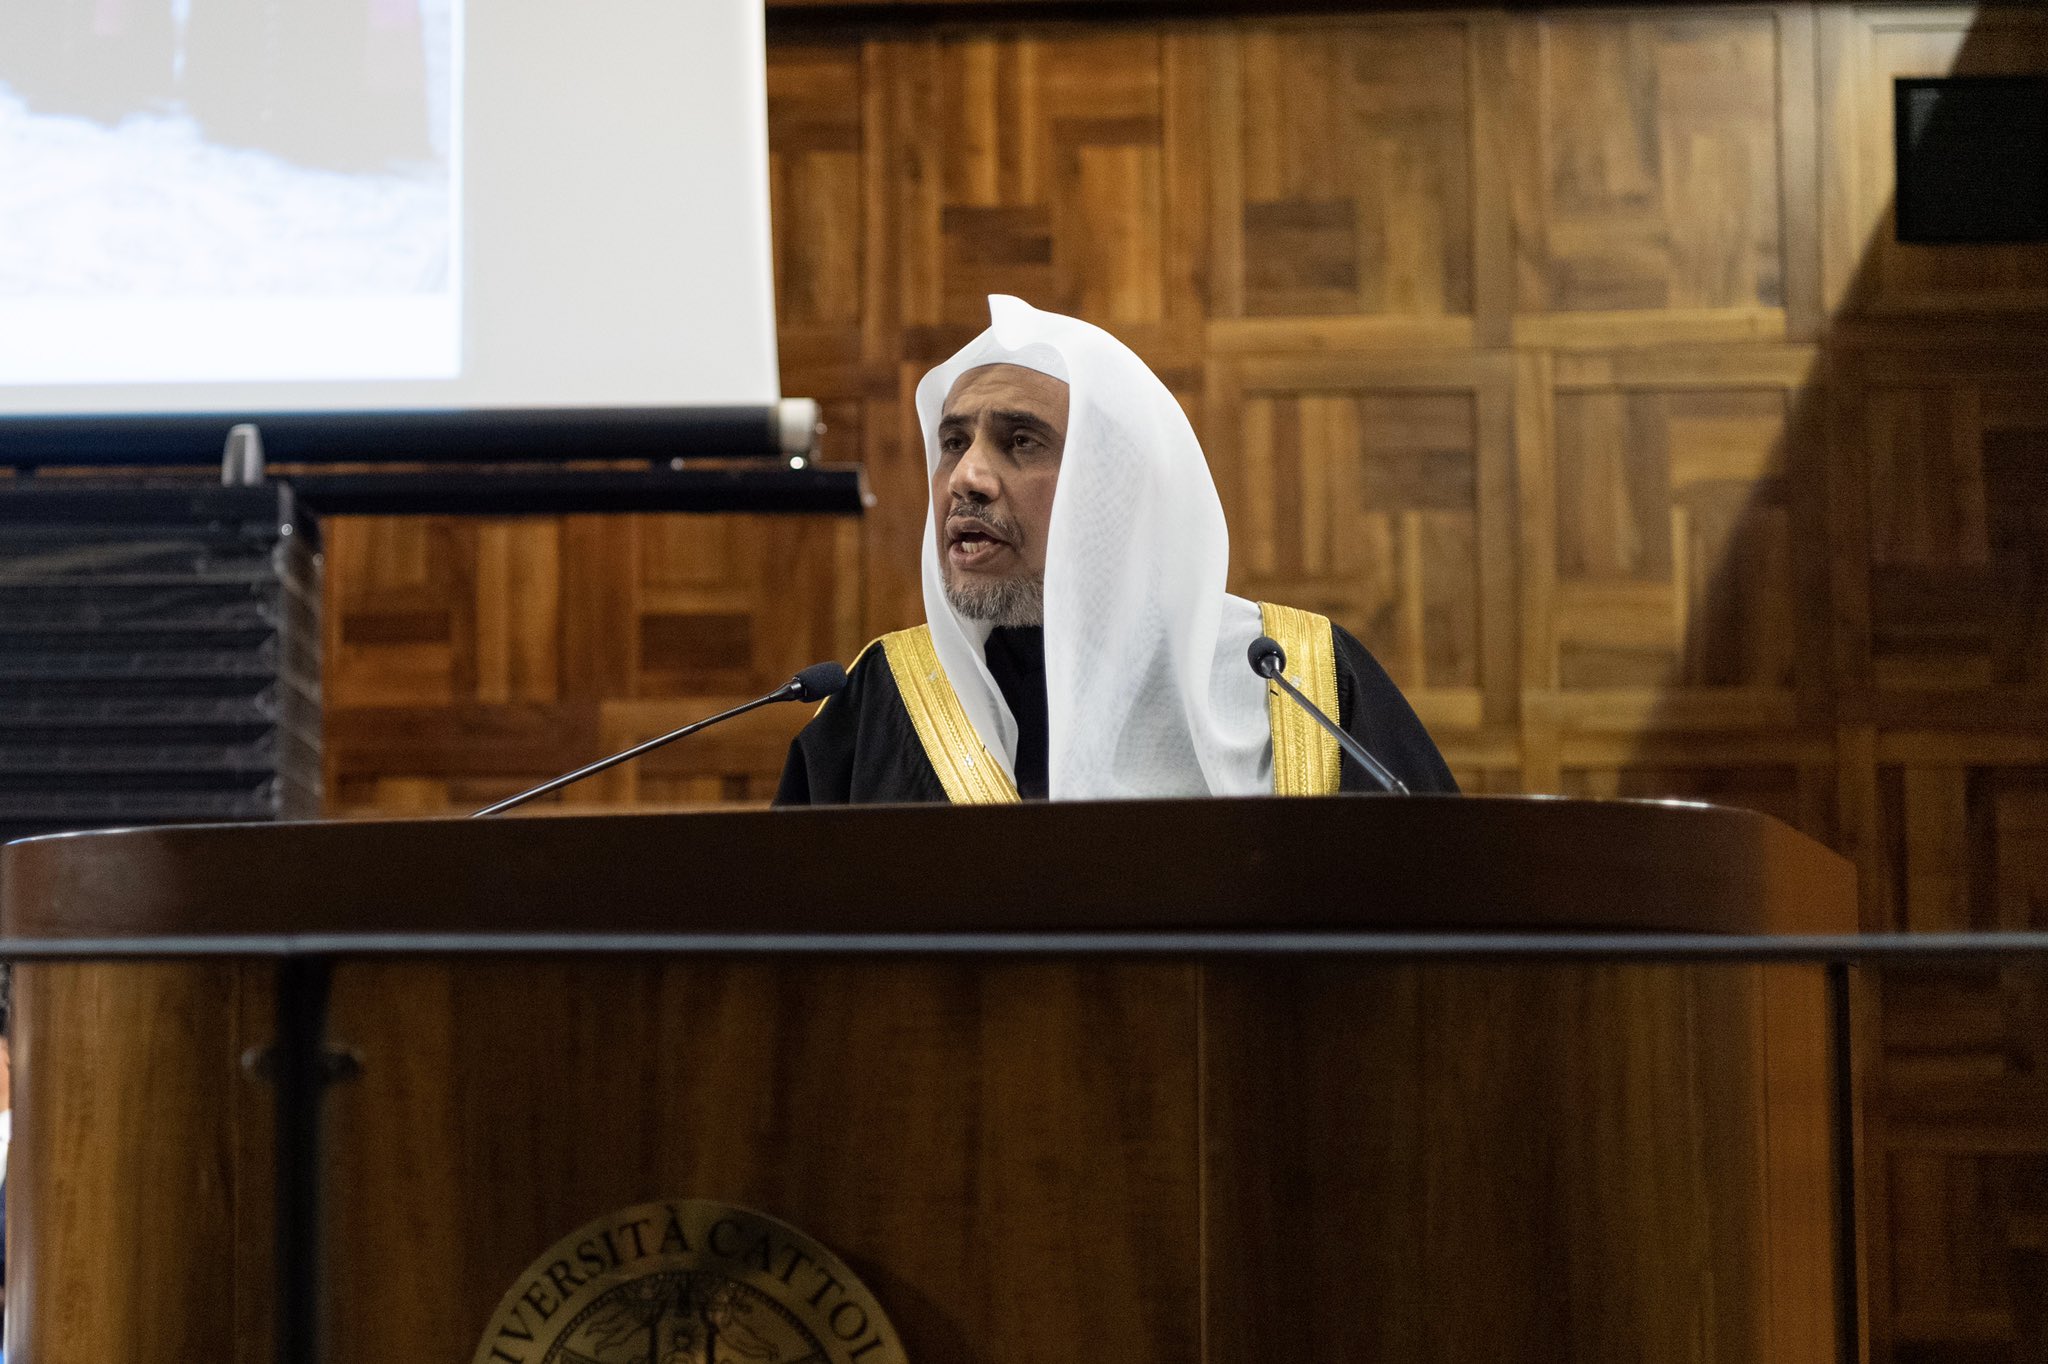  شیخ ڈاکٹر محمدالعیسی نے کیتھولک یونیورسٹی میں لیکچر کے دوران پوپفرانسس کے اسلام کے ساتھ منصفانہ اور اعلانیہ بیانئے اور اسلام کے ساتھ جدید مسیحی مکالمے کی علامت کارڈنل ٹوران کی کوششوں کو سراہا